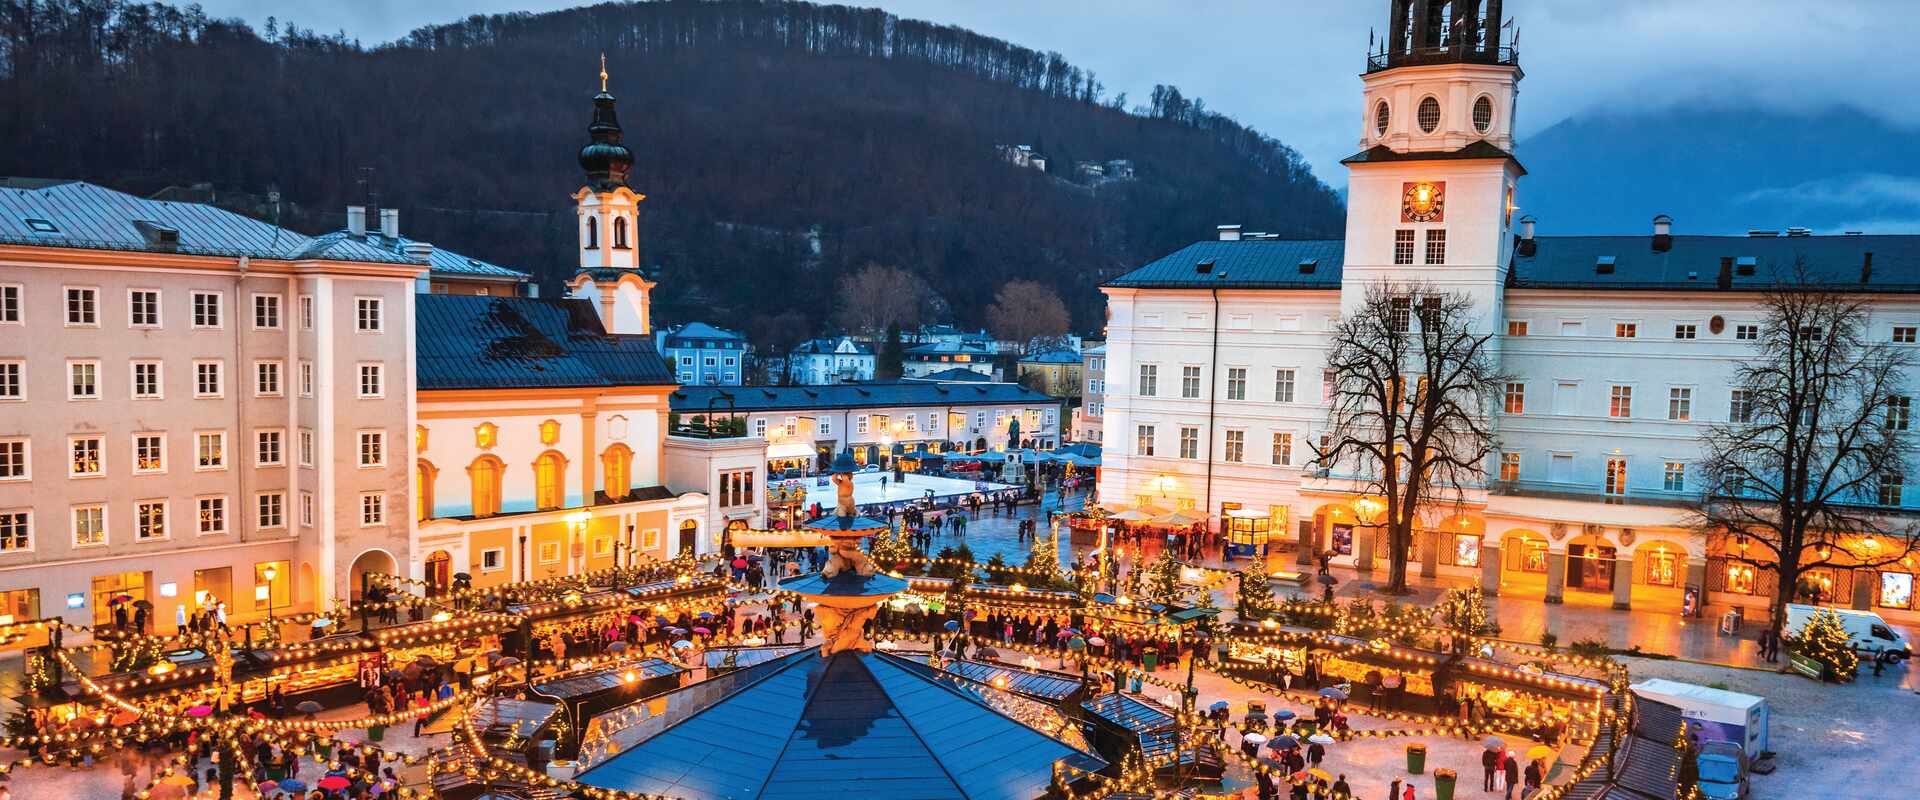 Christmas Markets in Salzburg, Austria